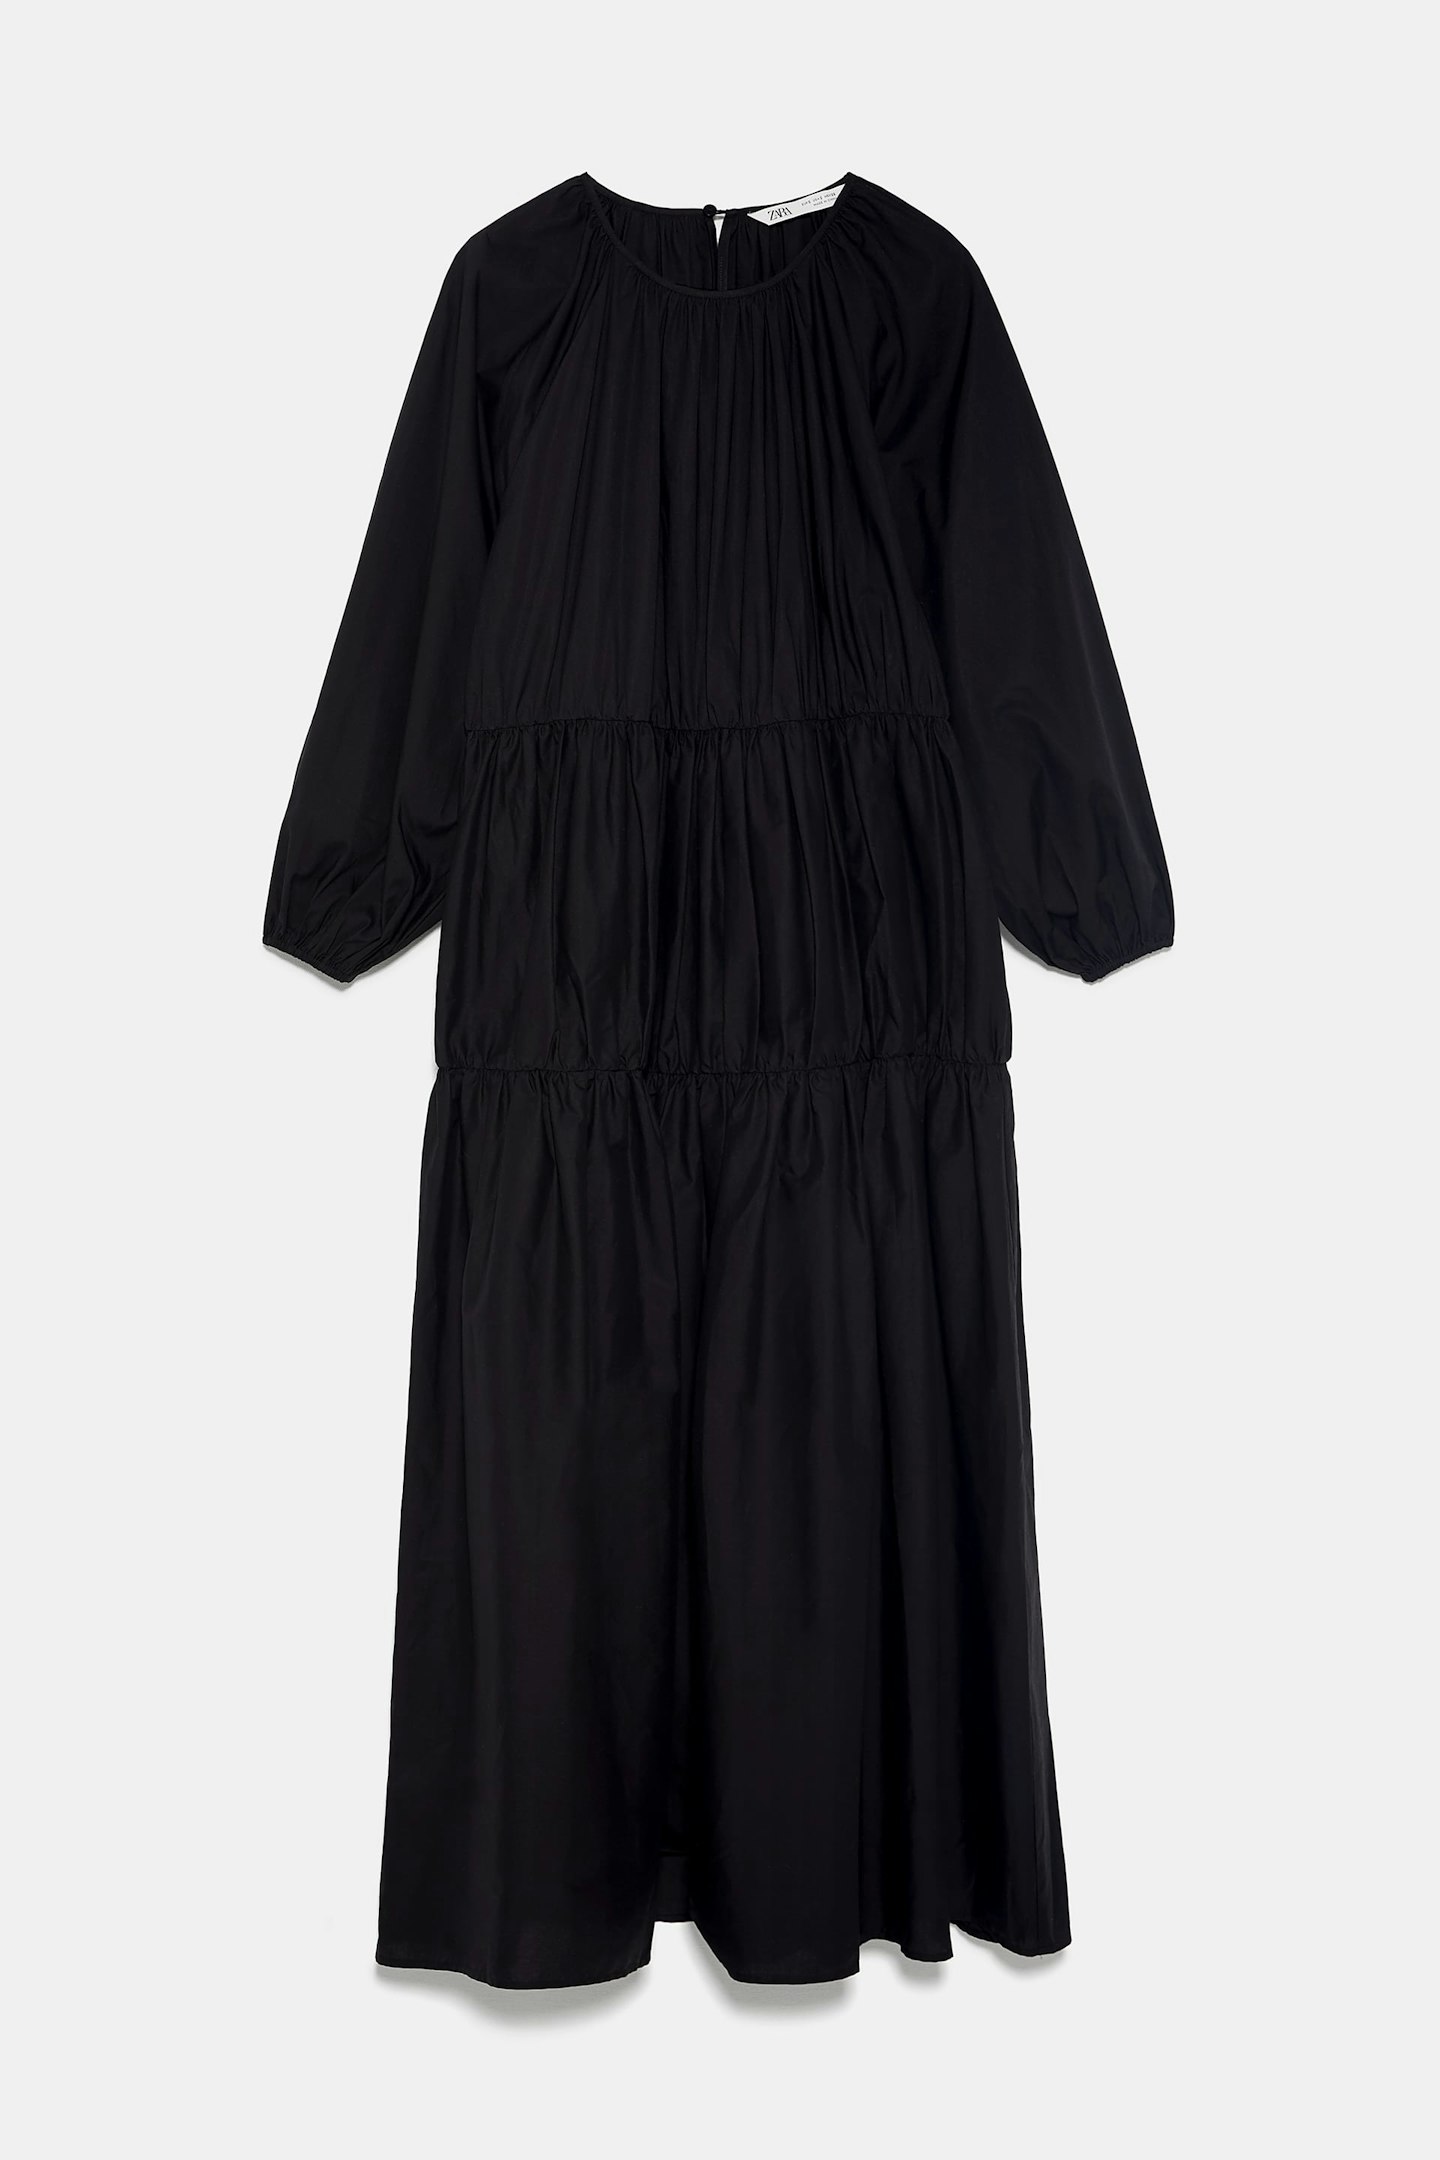 Zara, Poplin Midi Dress, £49.99